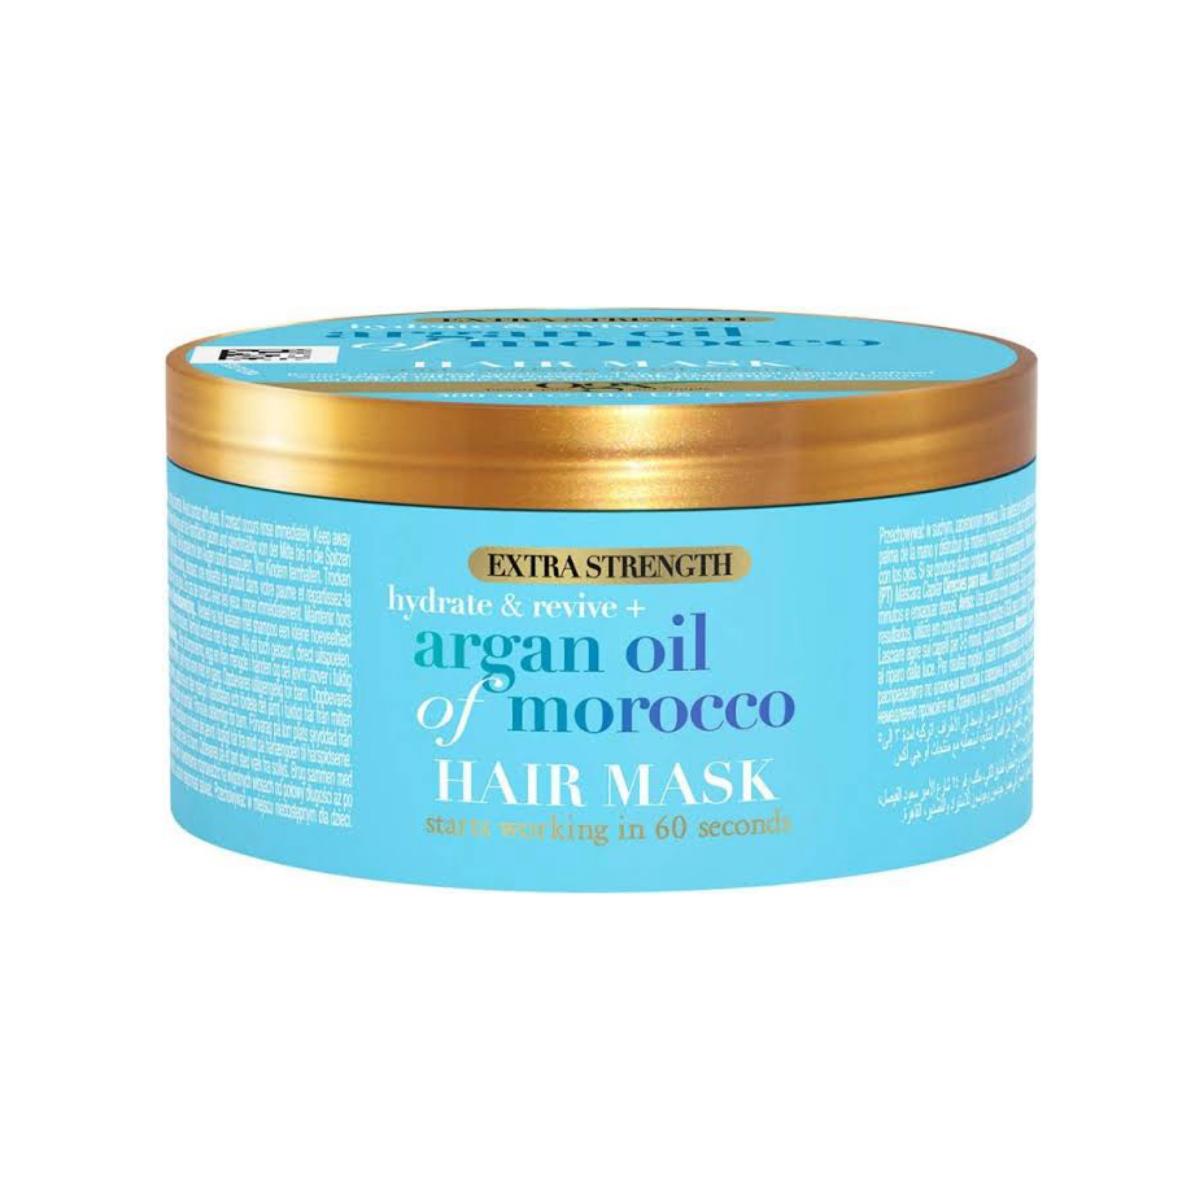 ماسک مو آرگان - Argan oil of morocco hair mask